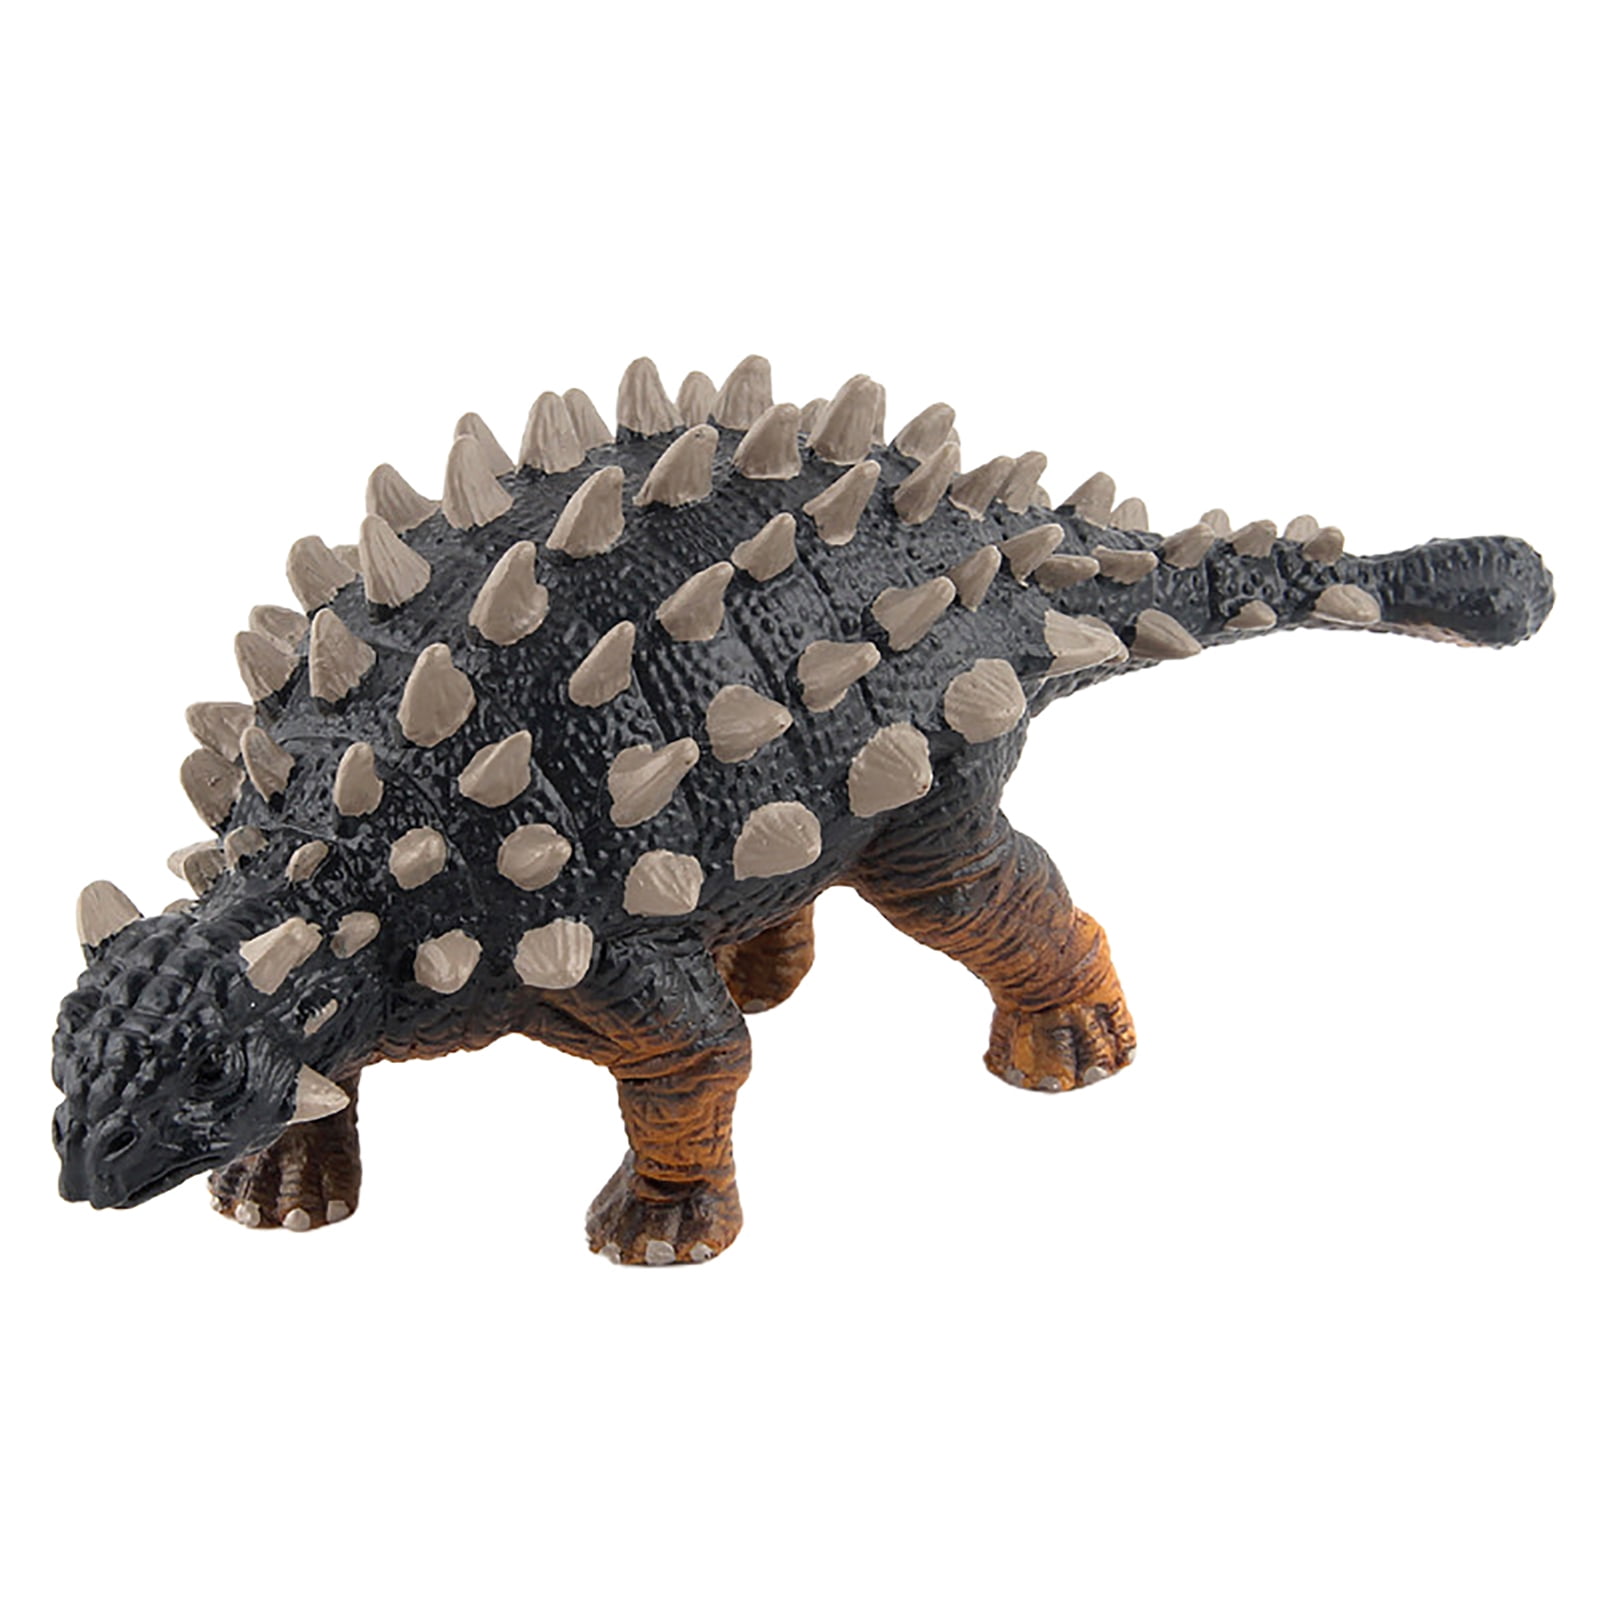 Saichania Dinosaur Figure Ankylosaurus Animal Model Collector Decor Kid Toy Gift 